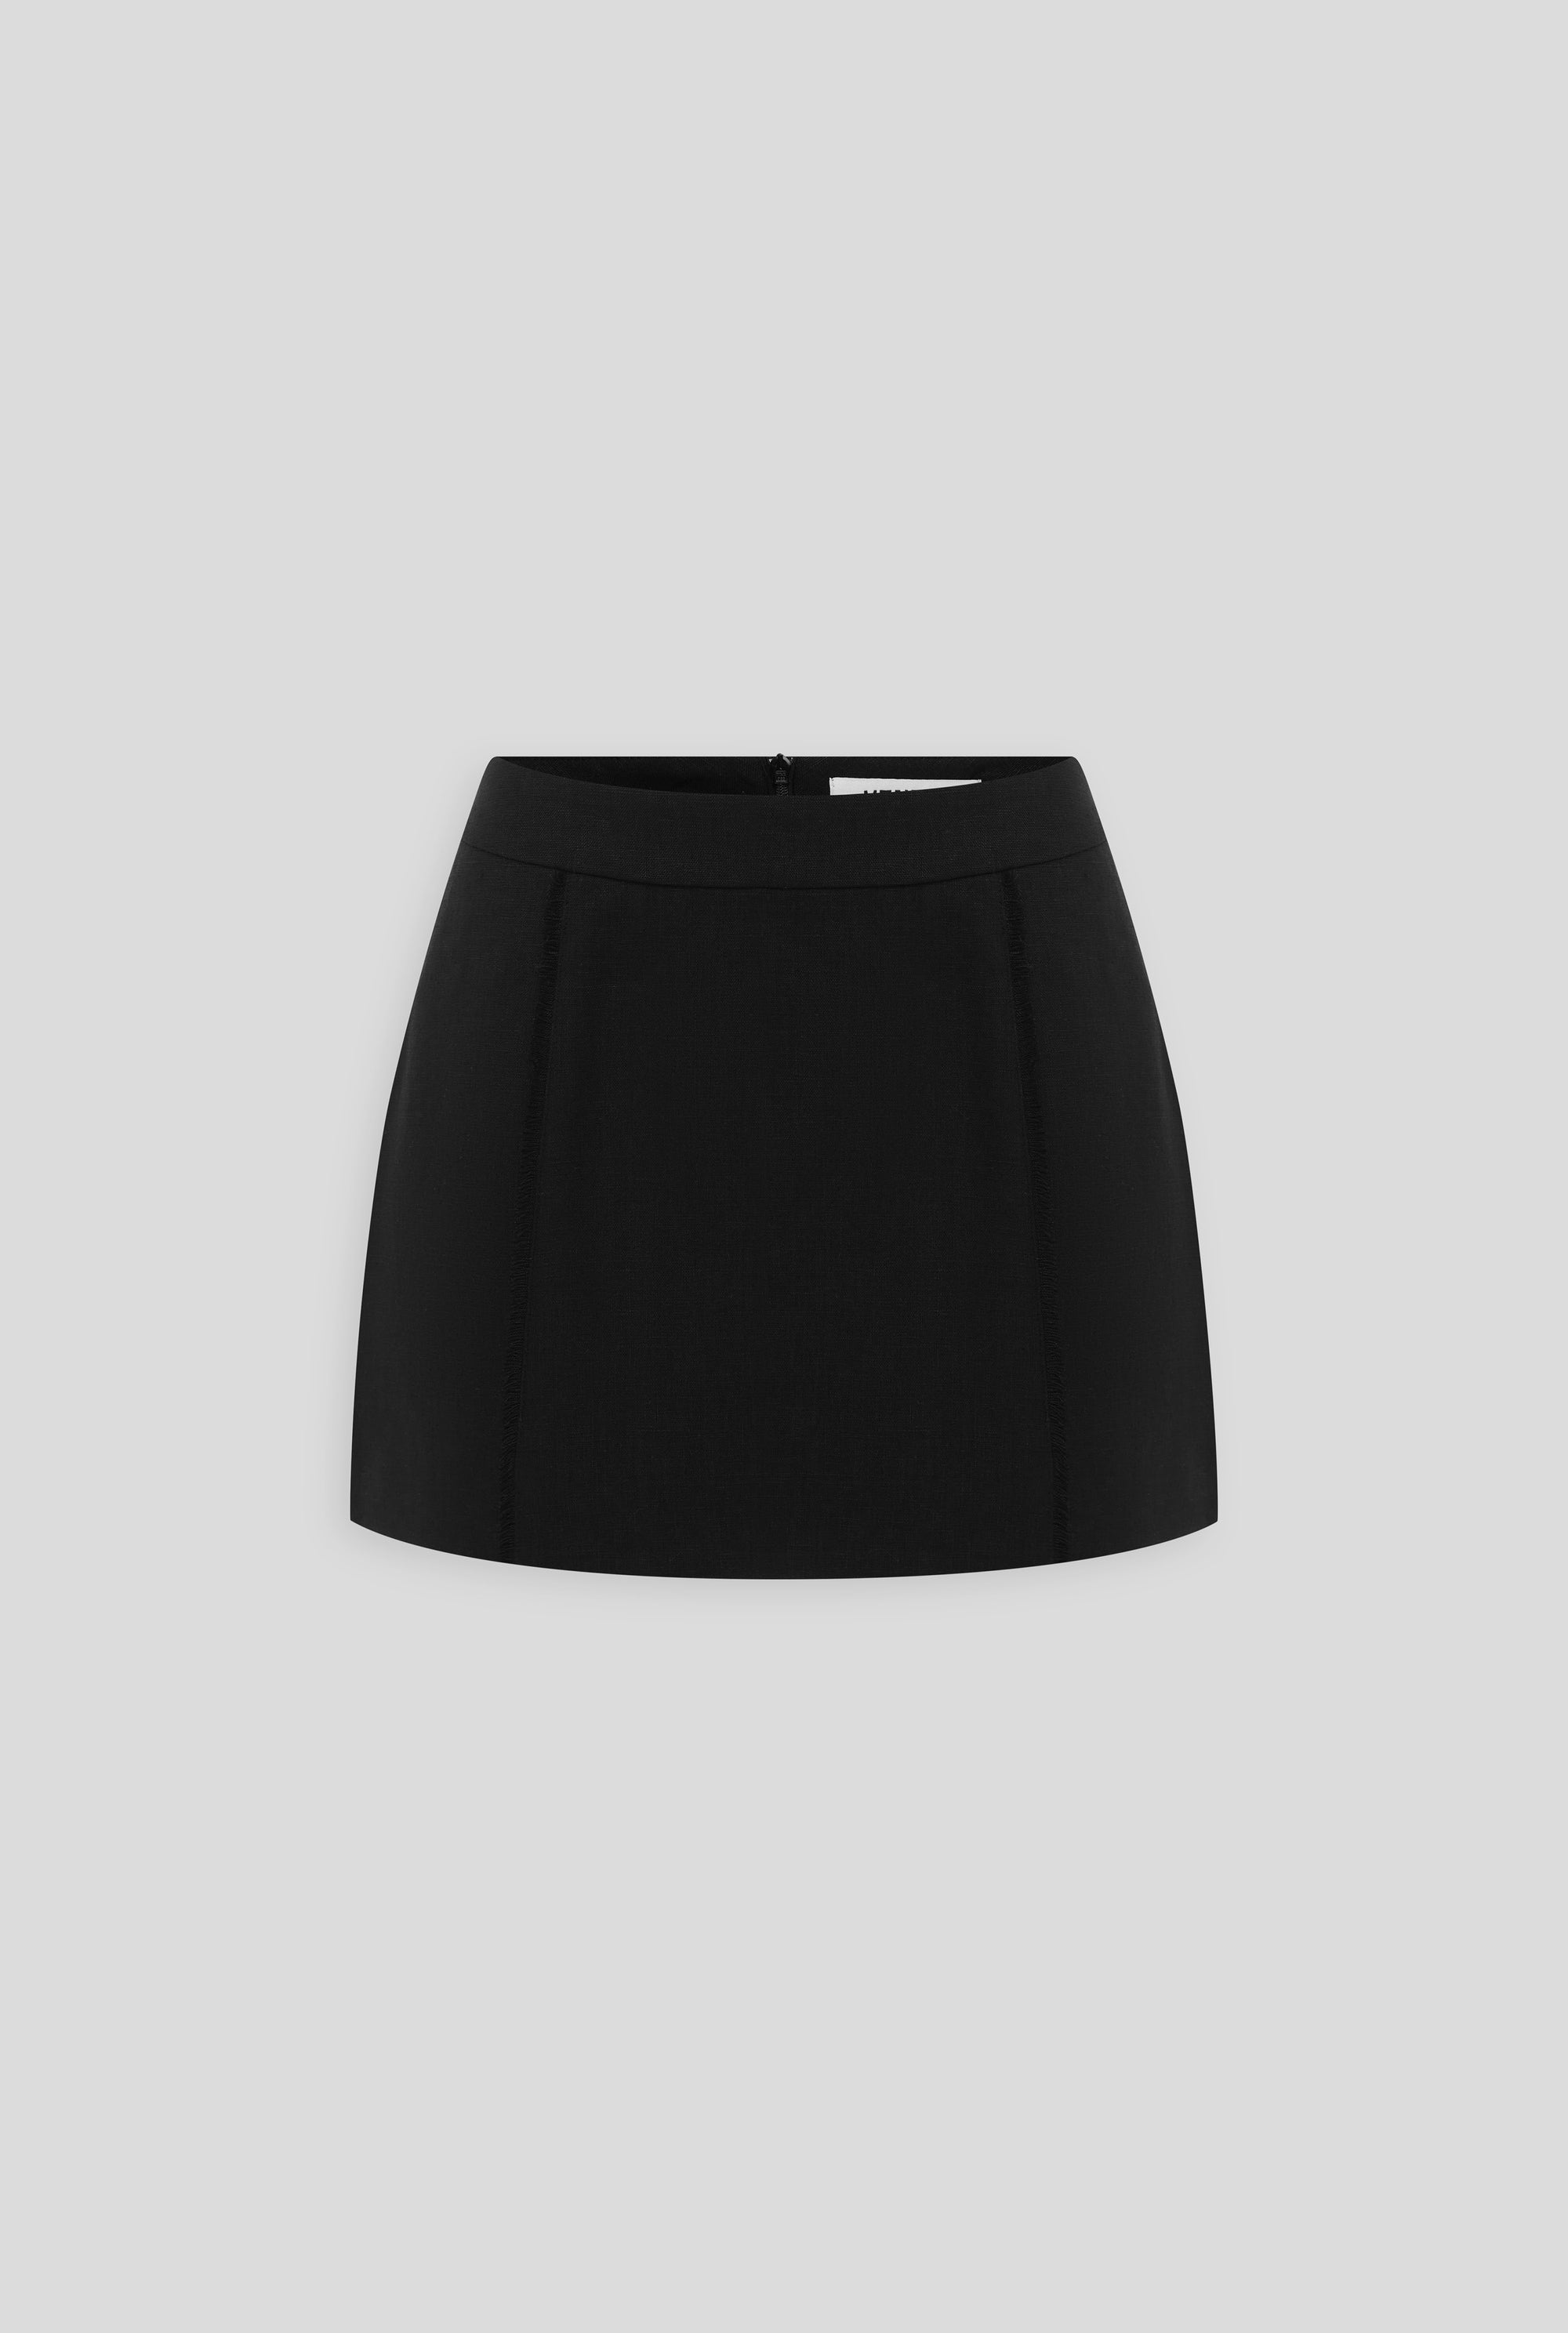 Venroy - Womens Tailored Linen Mini Skirt in Black | Venroy | Premium ...